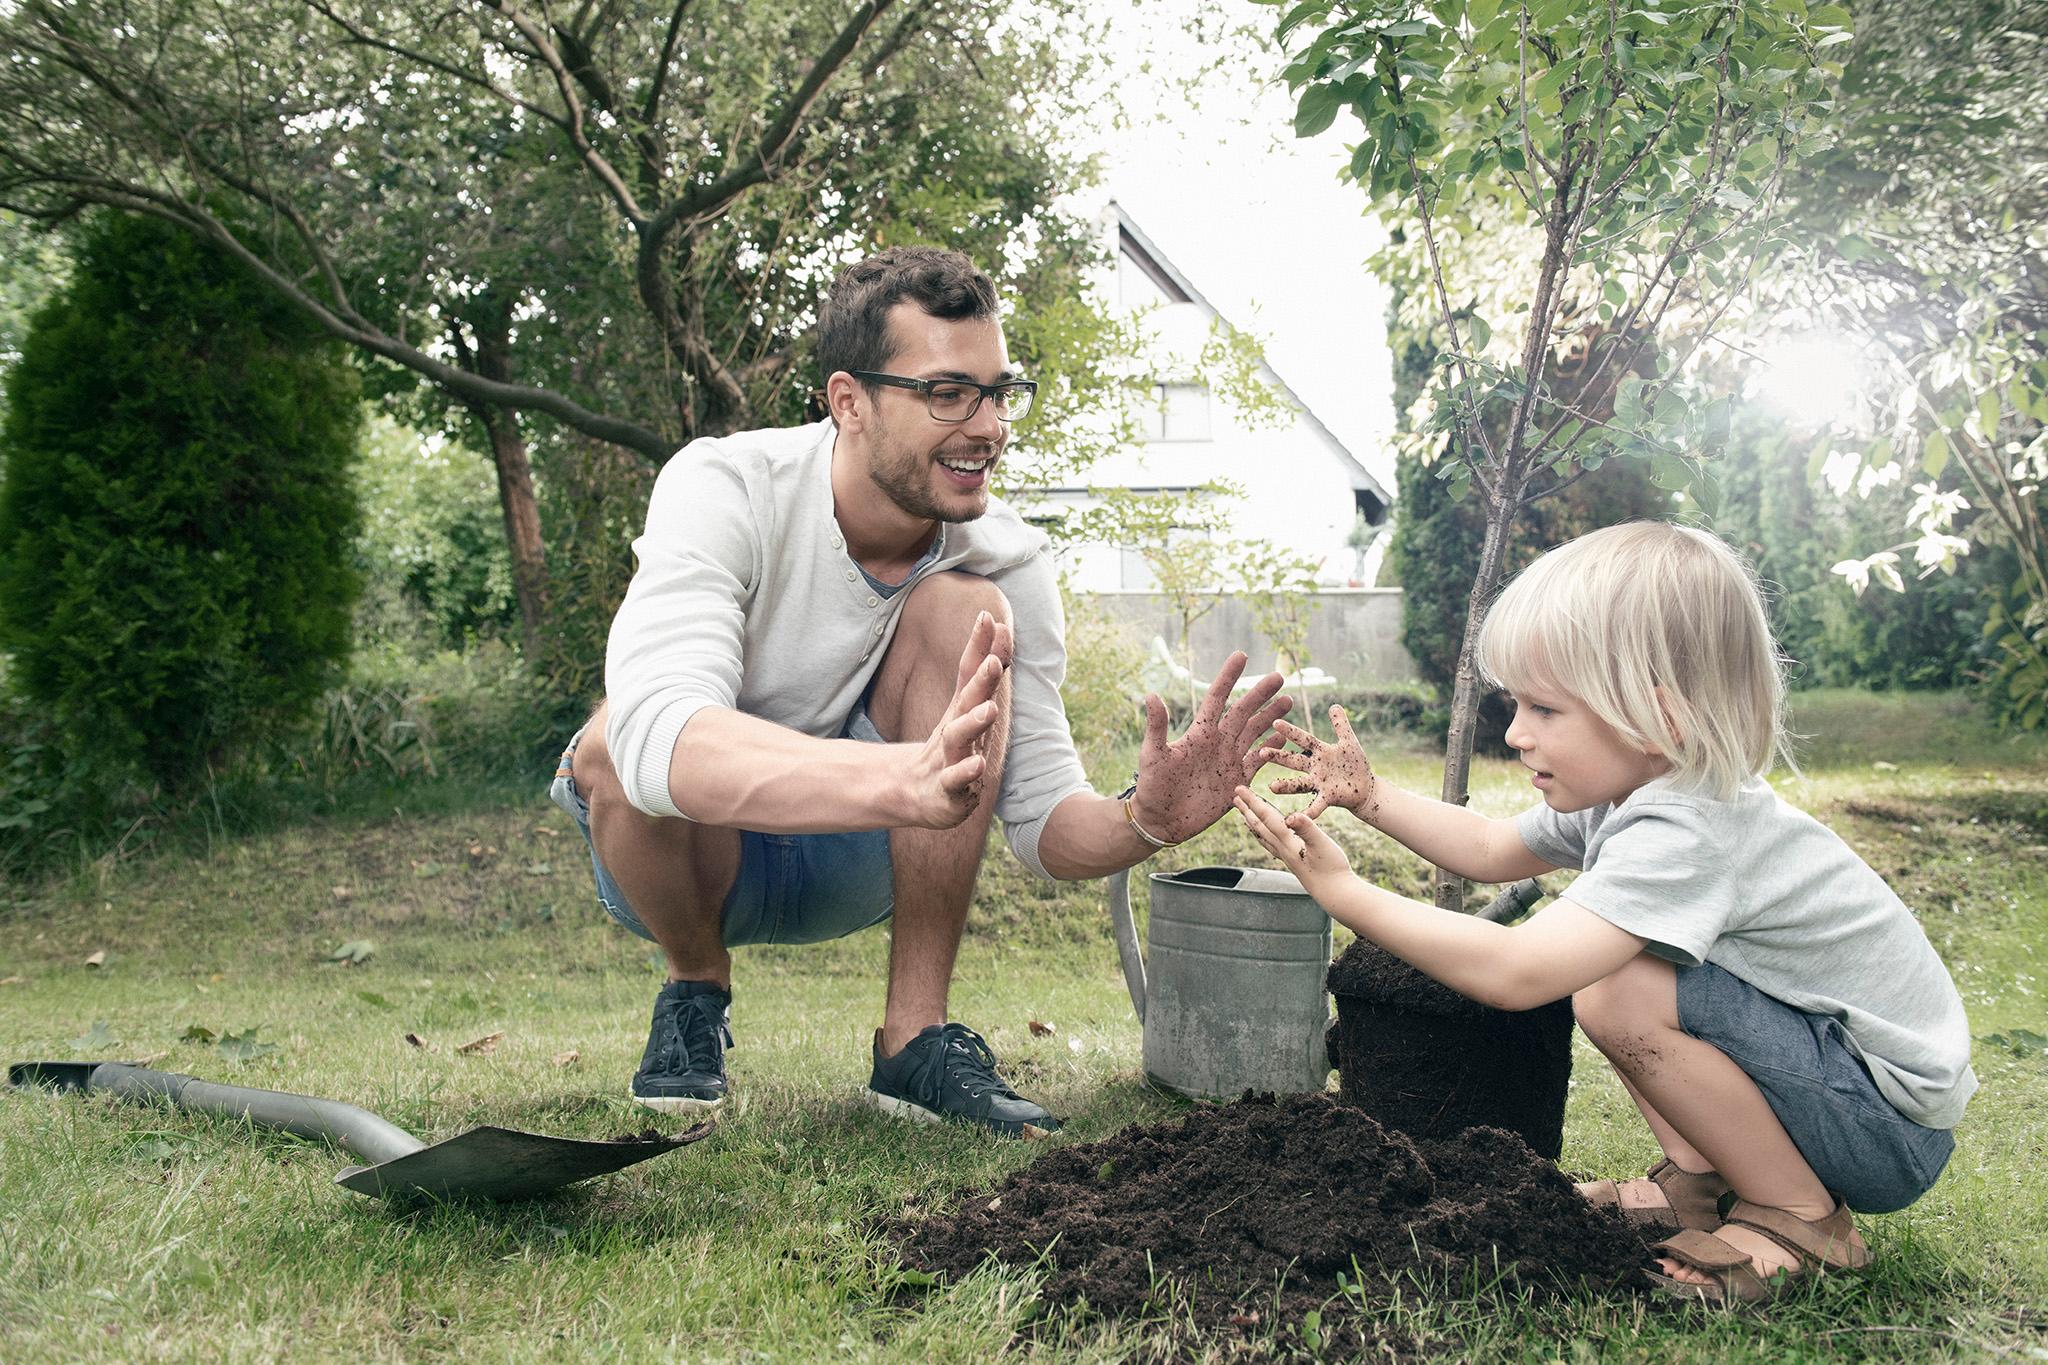 Mann und Kind pflanzen Baum im Garten - Ökostrom sinnvoll?